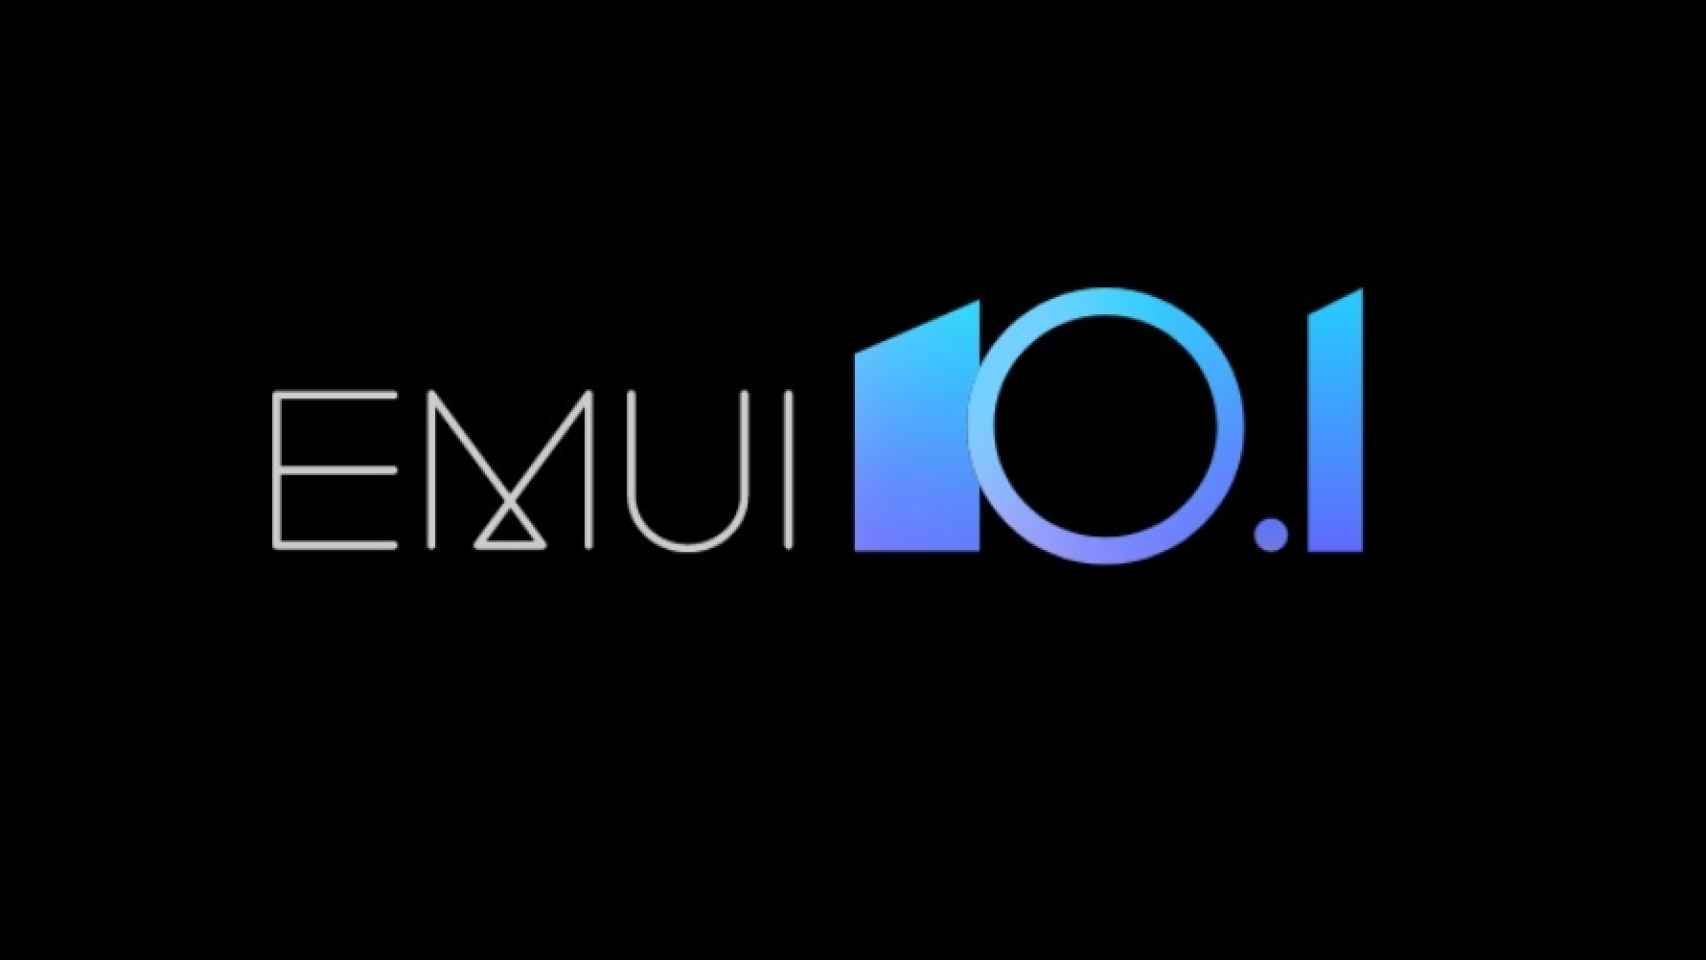 La actualización a EMUI 10.1 llega a más móviles de Huawei